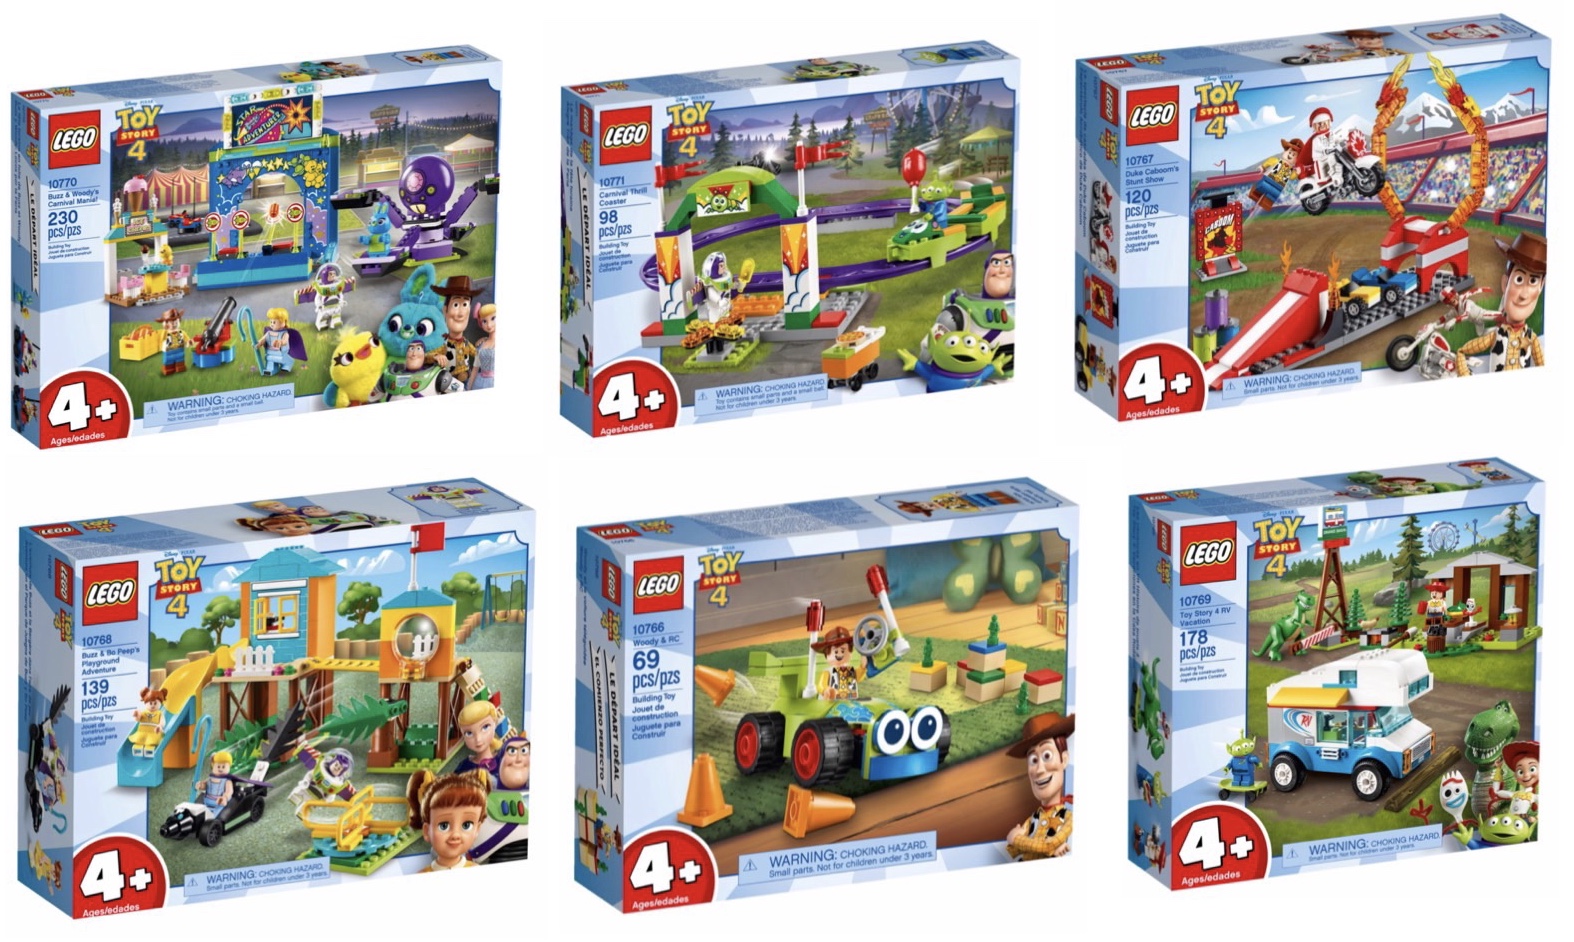 Søg Tilføj til Instruere LEGO Toy Story 4 - Minifigure Review - Minifigures.com Blog